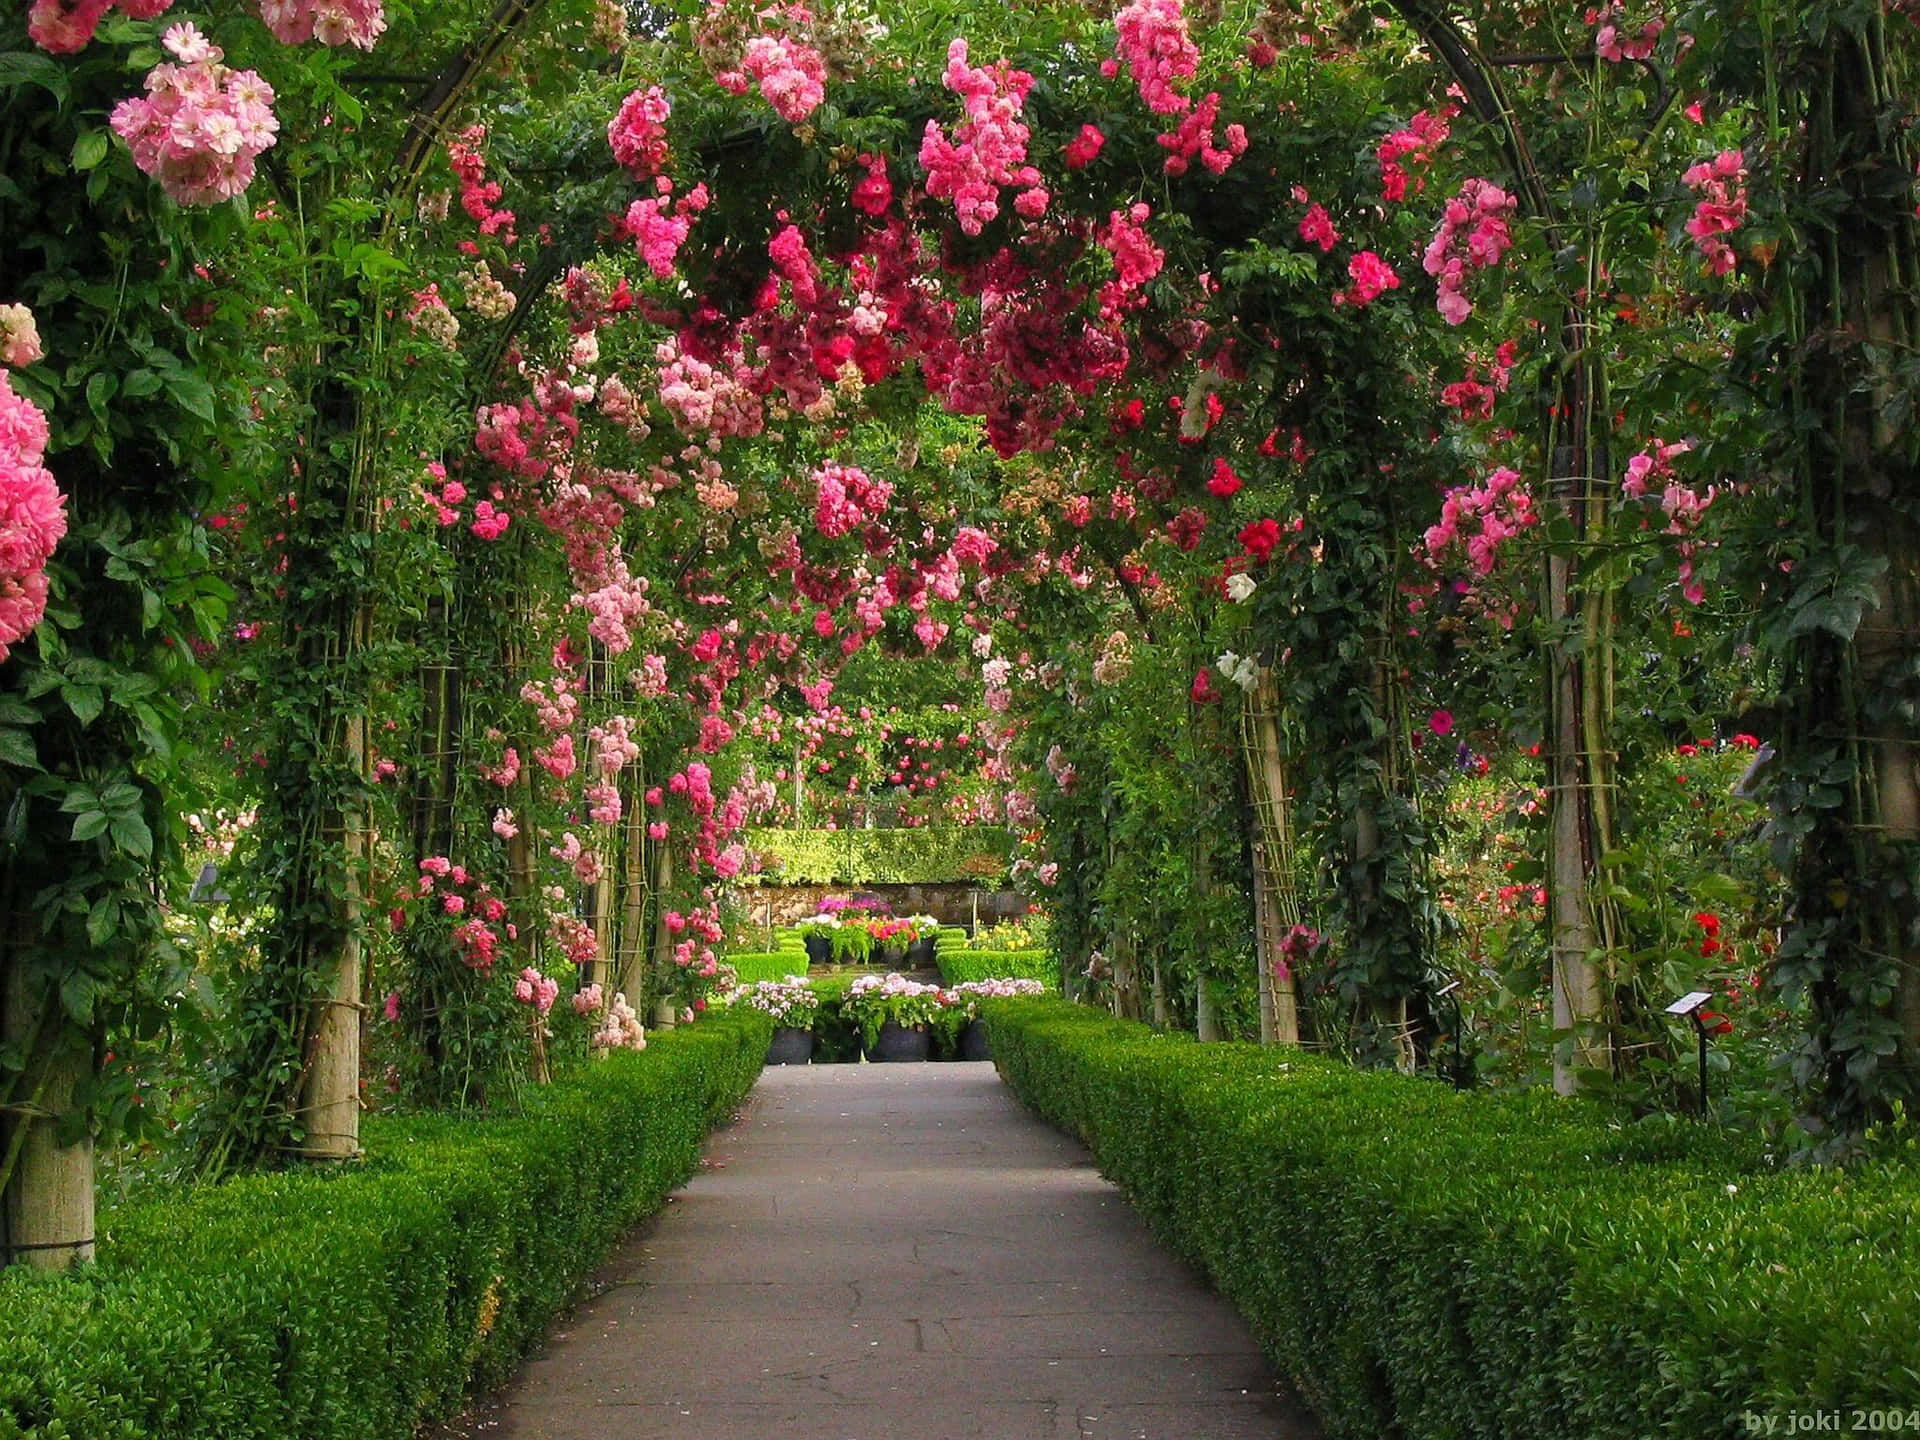 Imagende Un Arco De Rosas De Jardín Con Un Sendero.